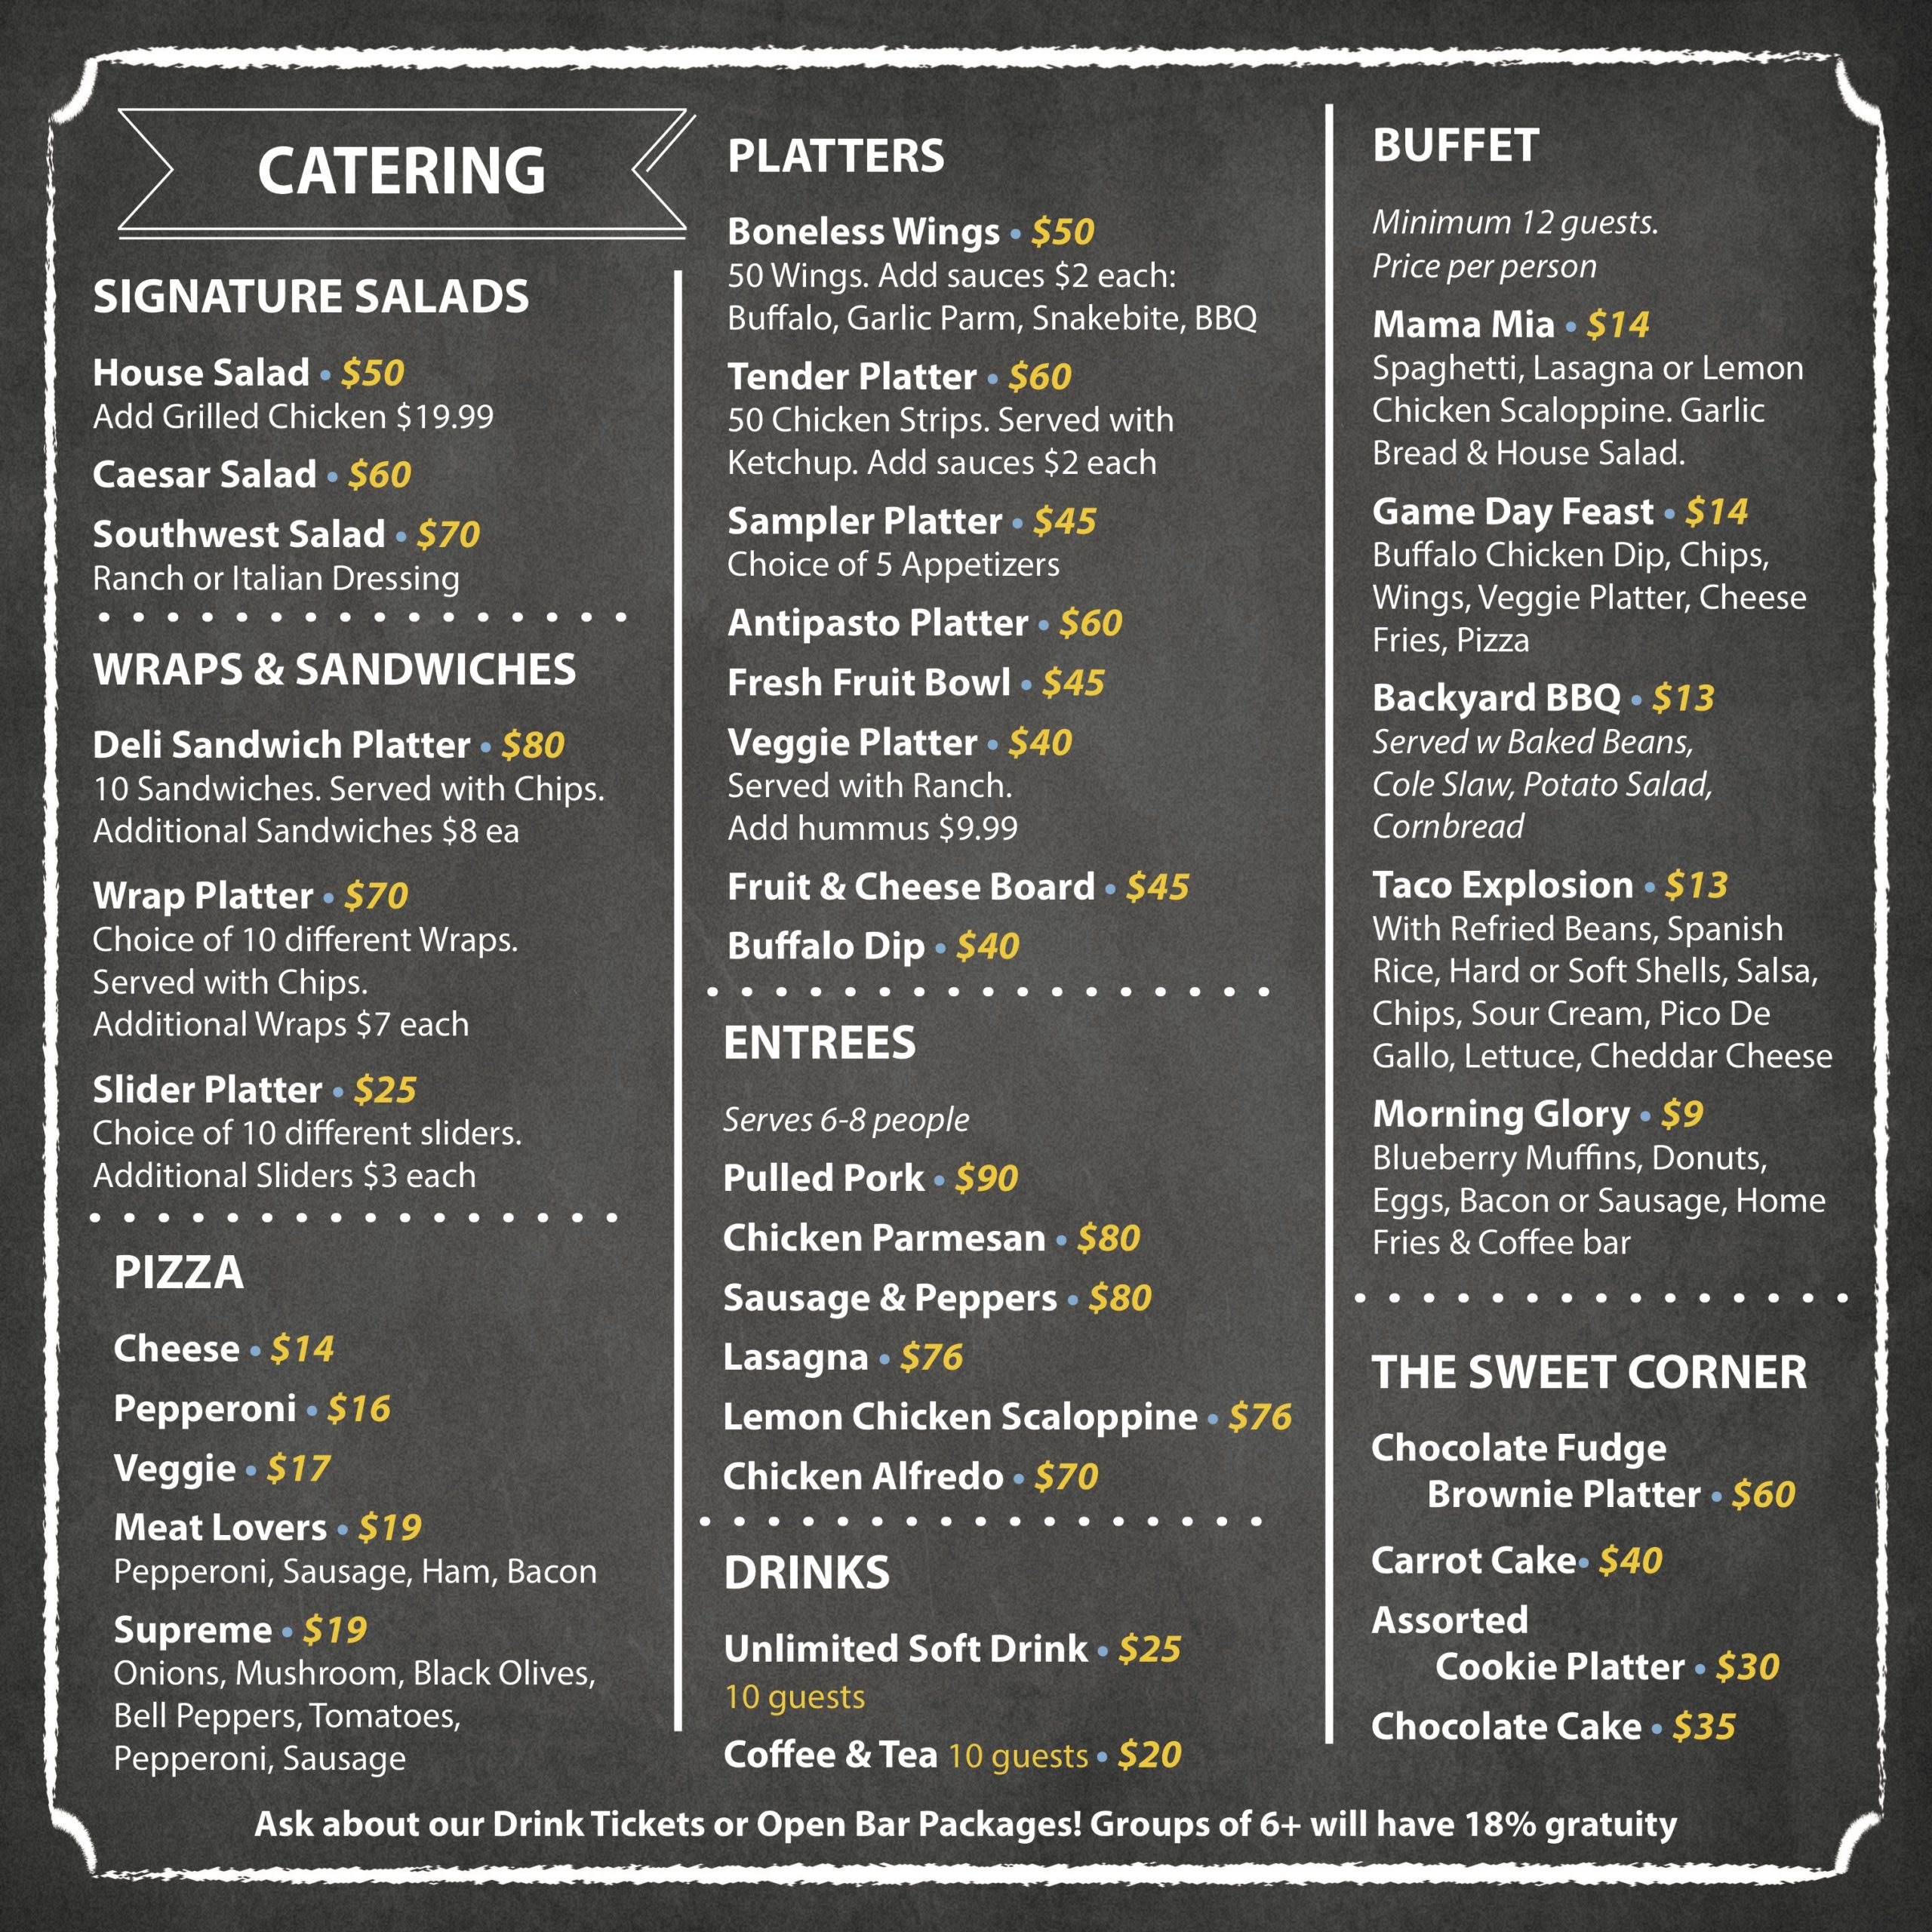 catering-menu